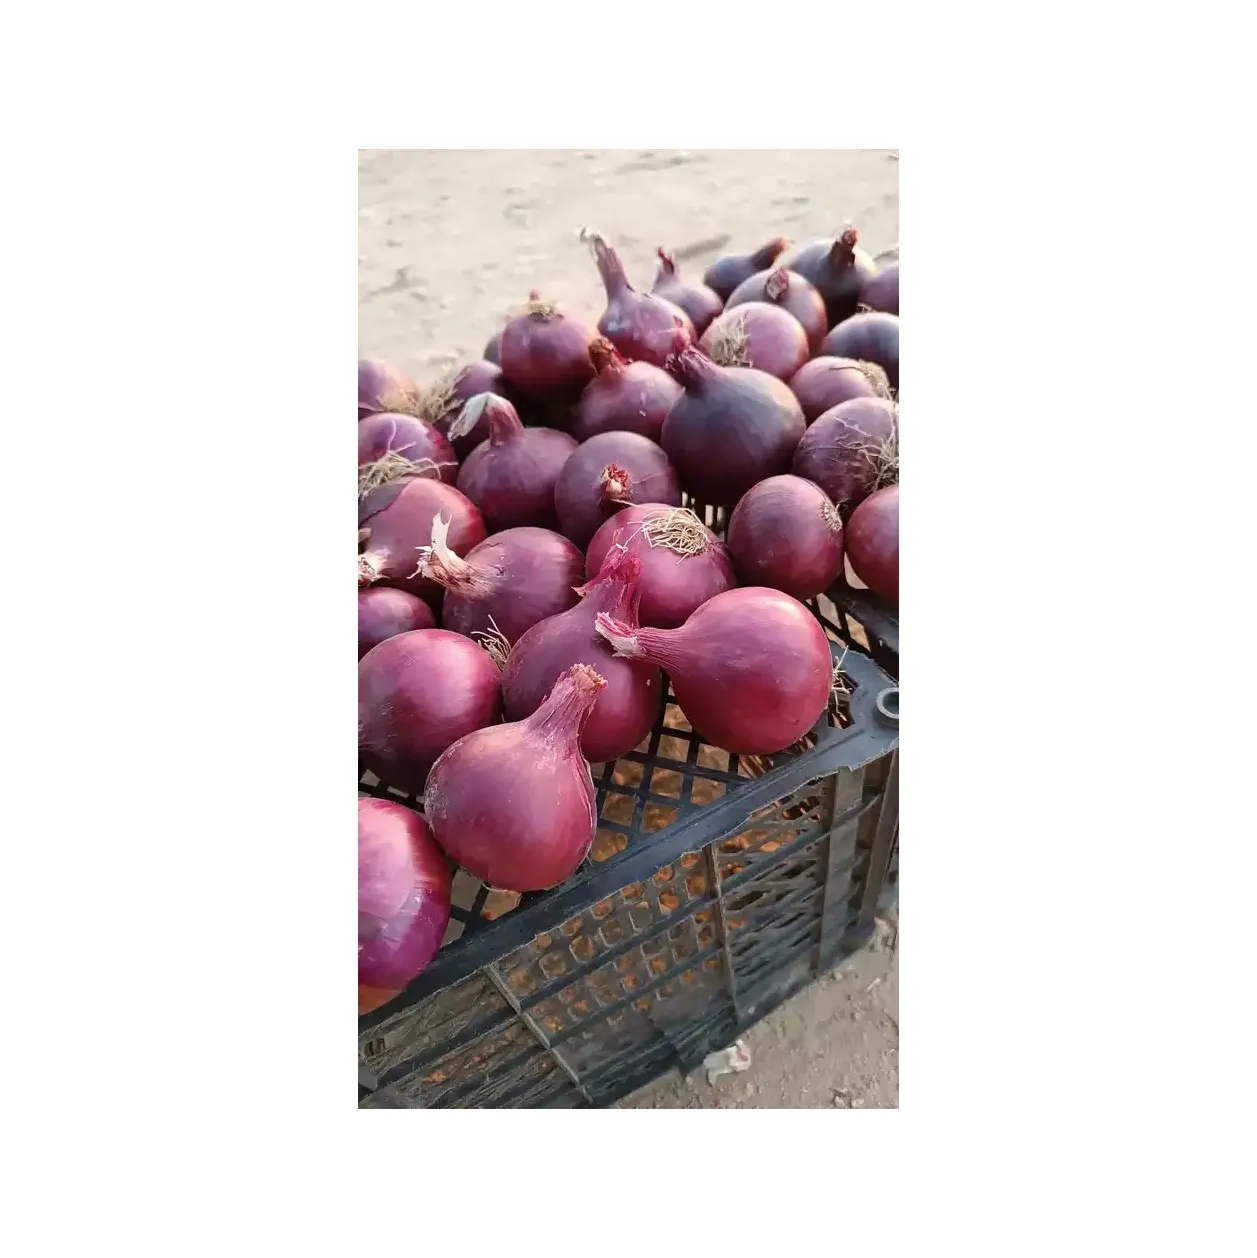 Cipolla rossa fresca egiziana al miglior prezzo di alta qualità